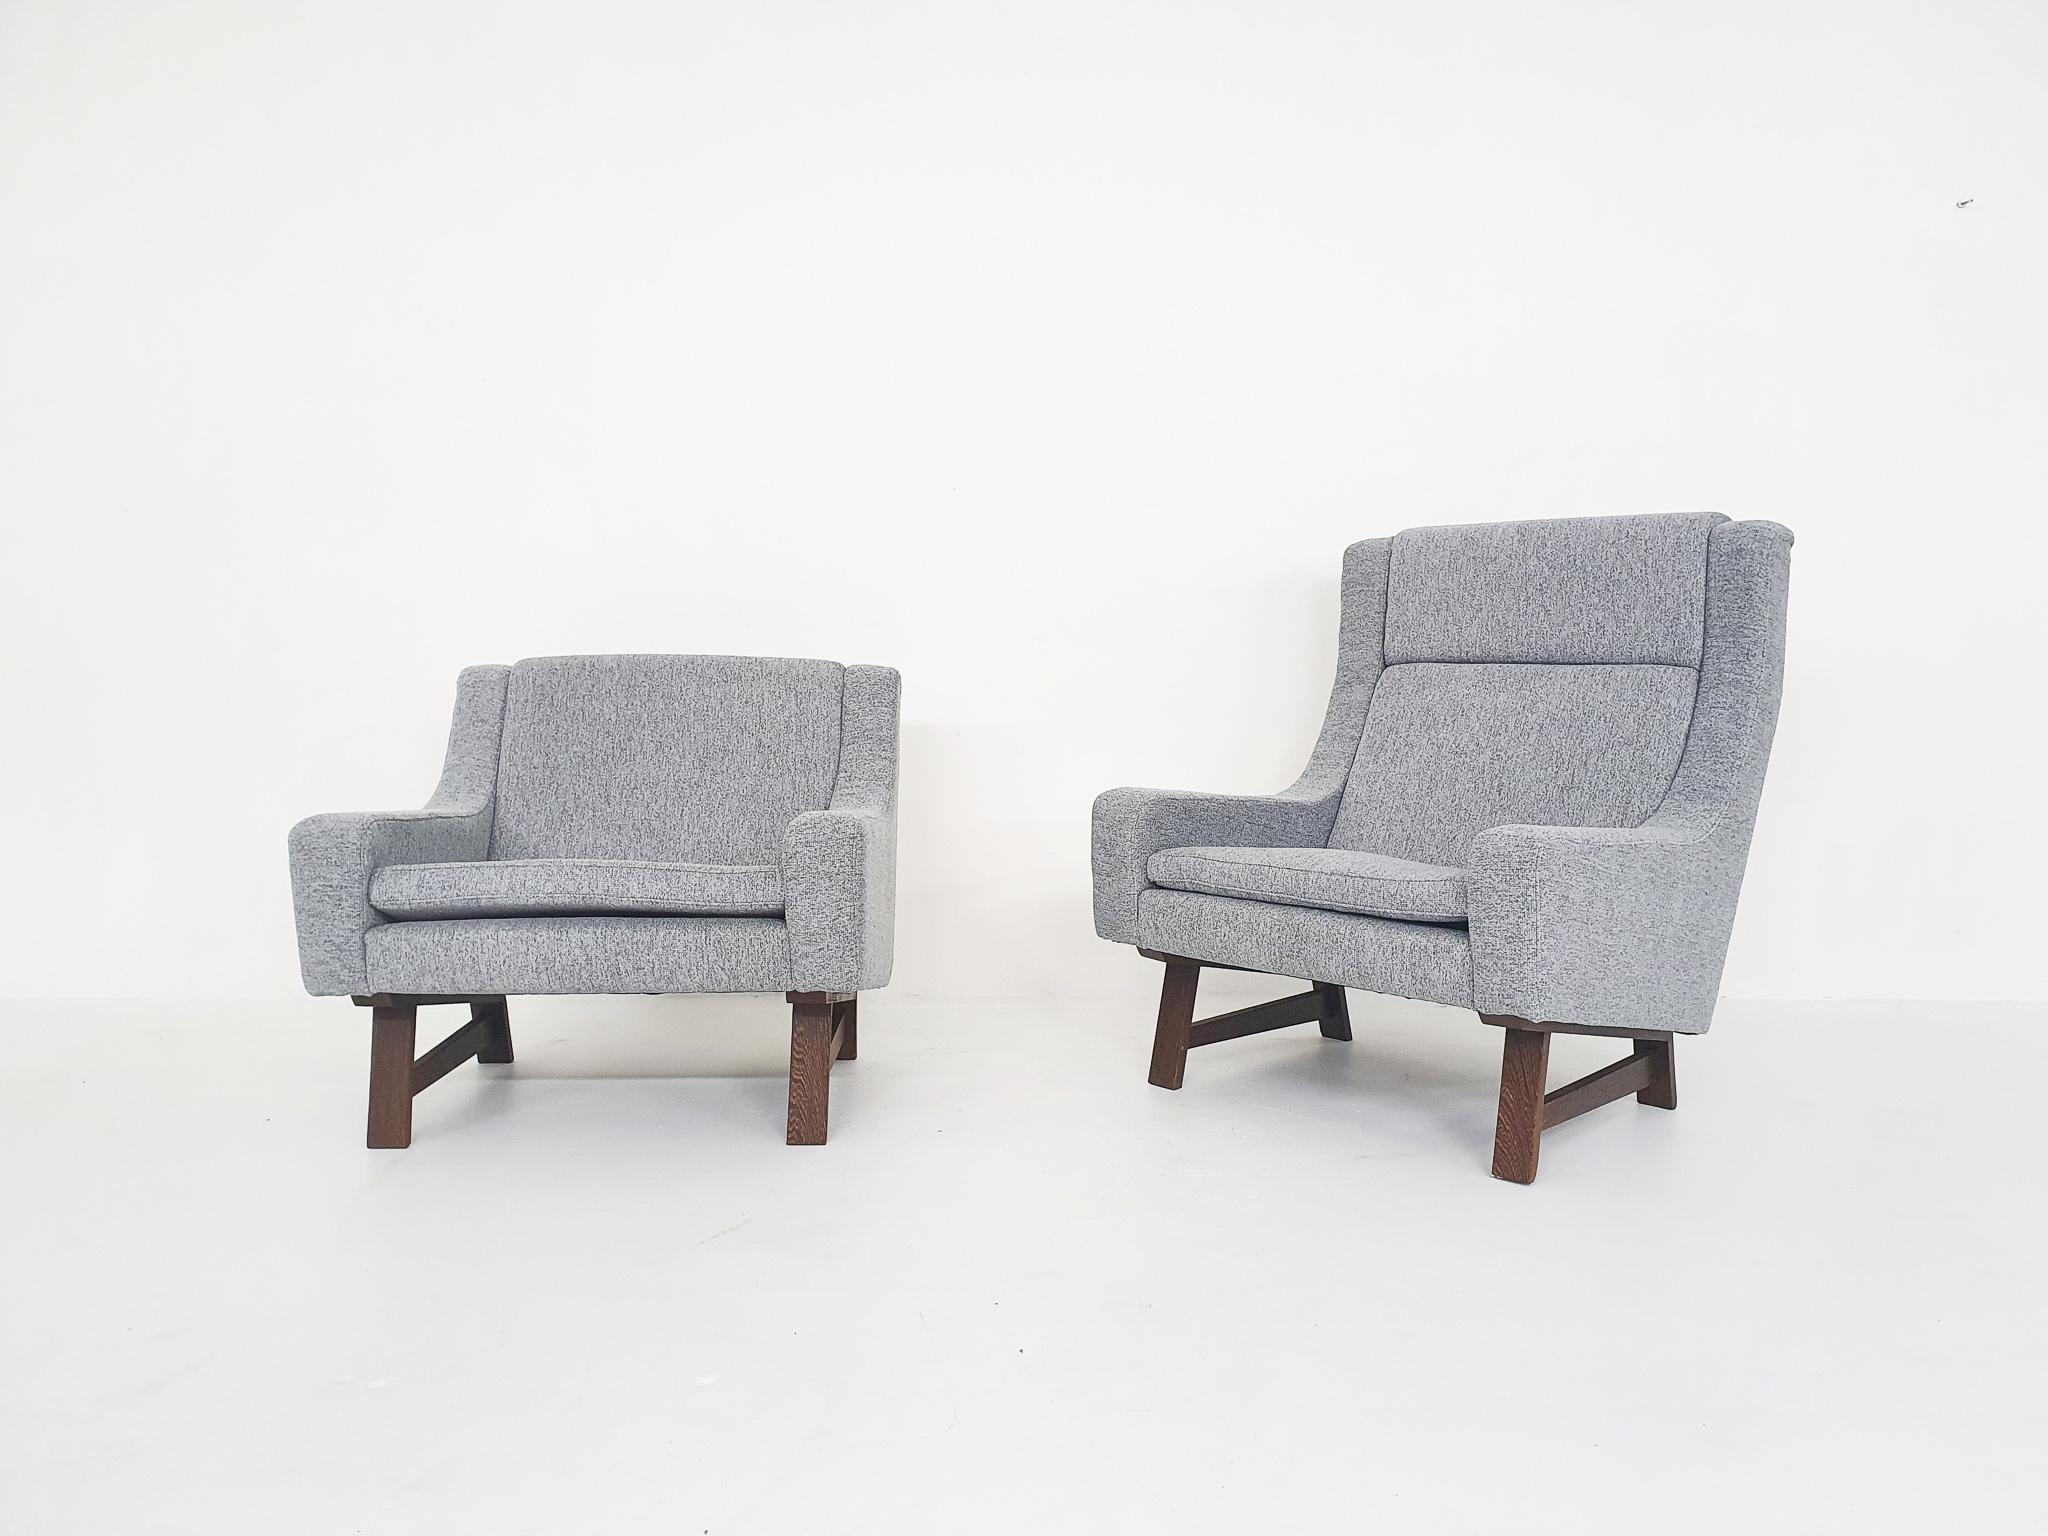 Un bel ensemble de chaises longues probablement fabriqué en Scandinavie ou aux Pays-Bas. L'ensemble se compose d'un modèle haut 